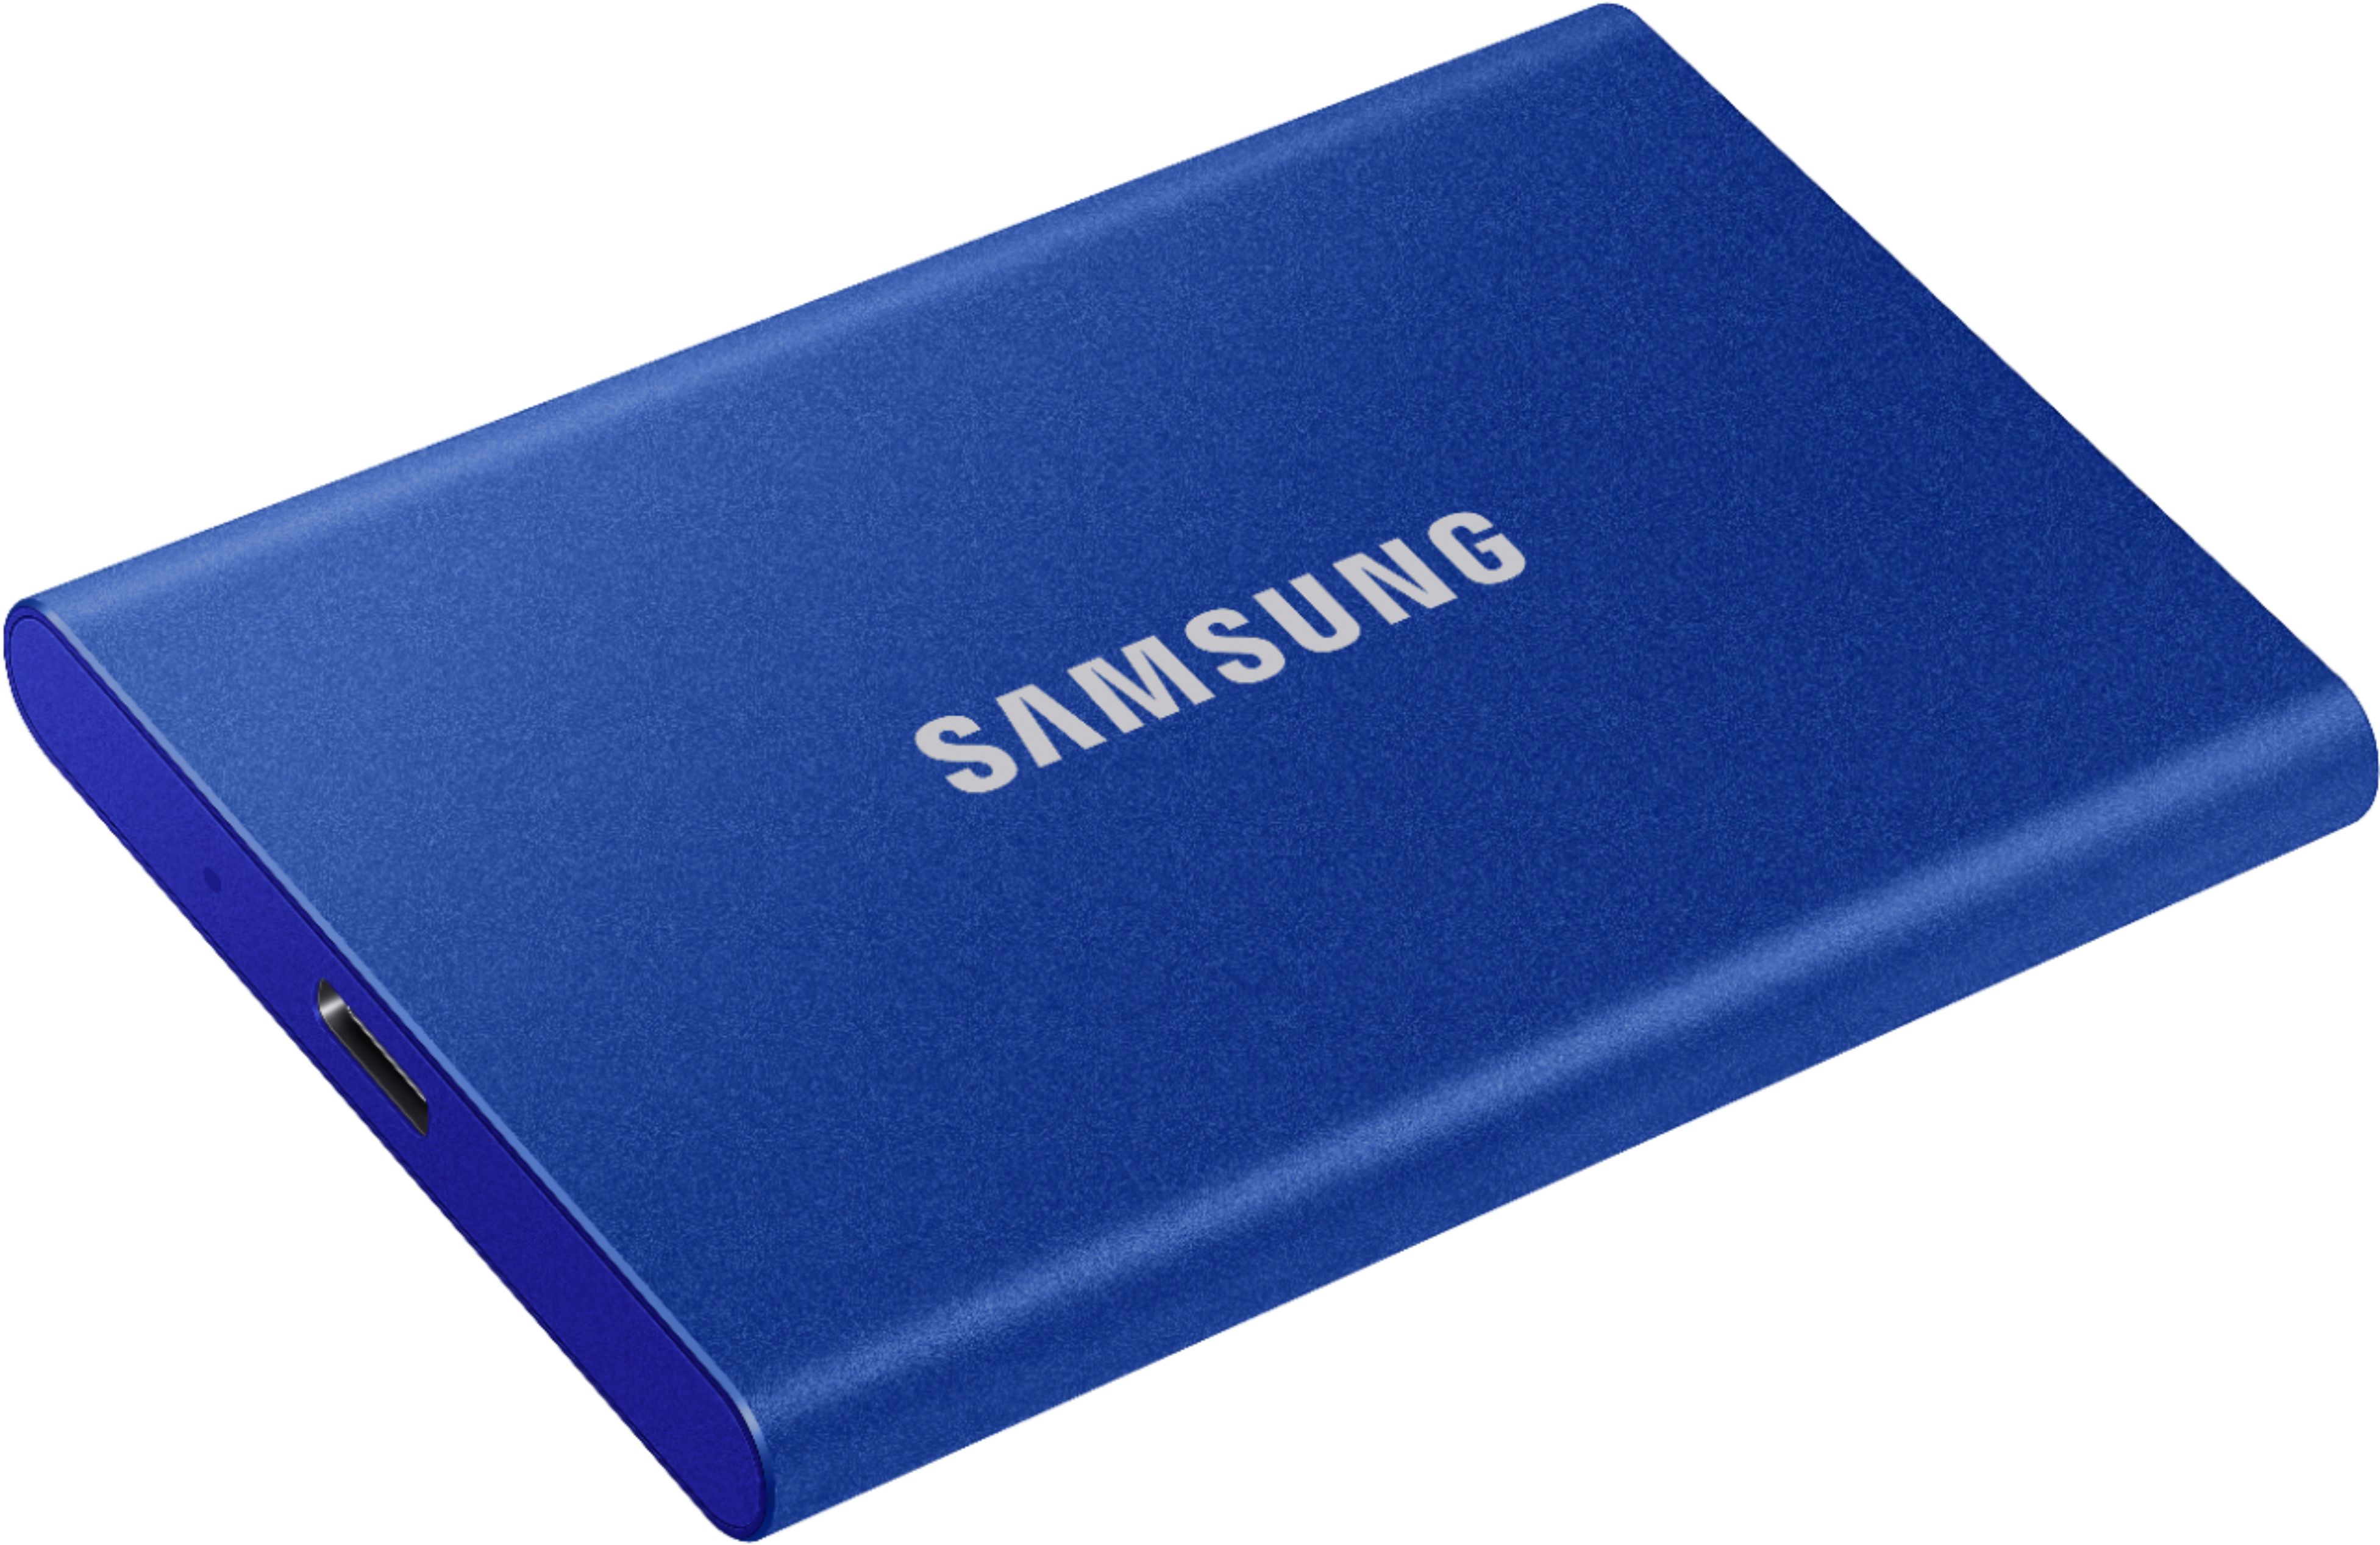 Samsung SSD externe Portable T7 1 TB, Bleu Indigo